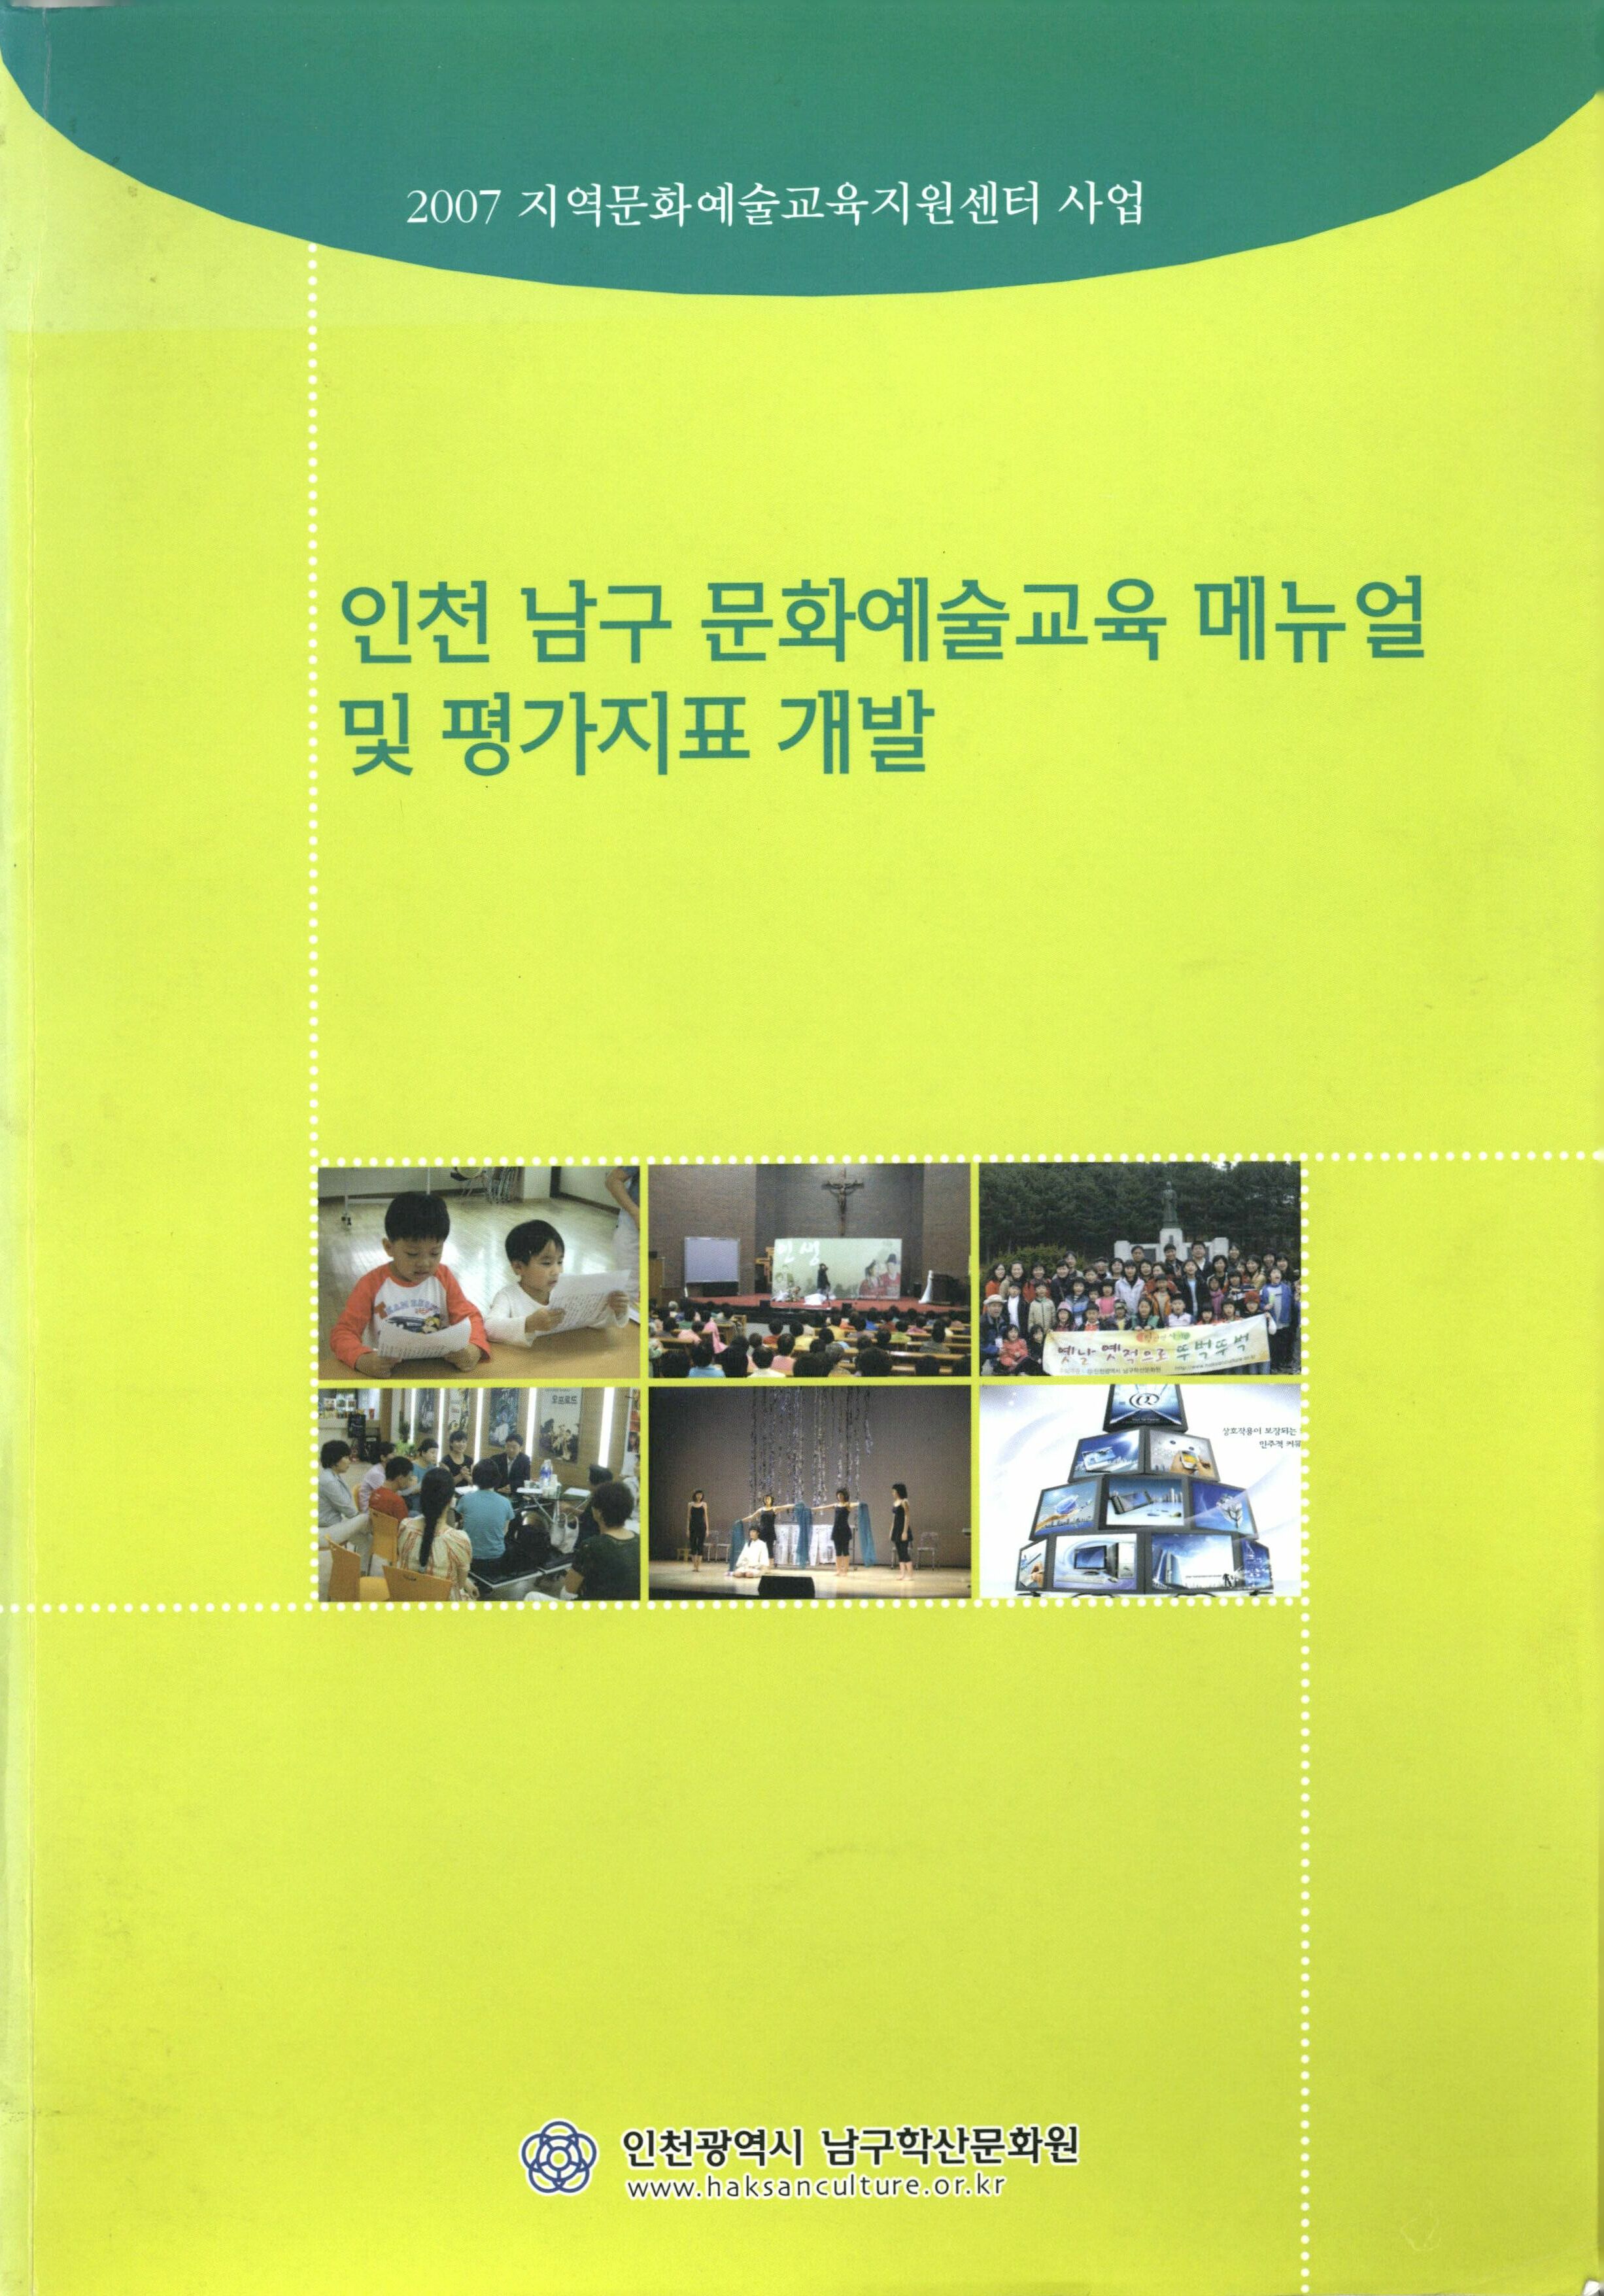 2007 지역문화예술교육지원센터 사업 인천 남구 문화예술교육 매뉴얼 및 평가지표 개발